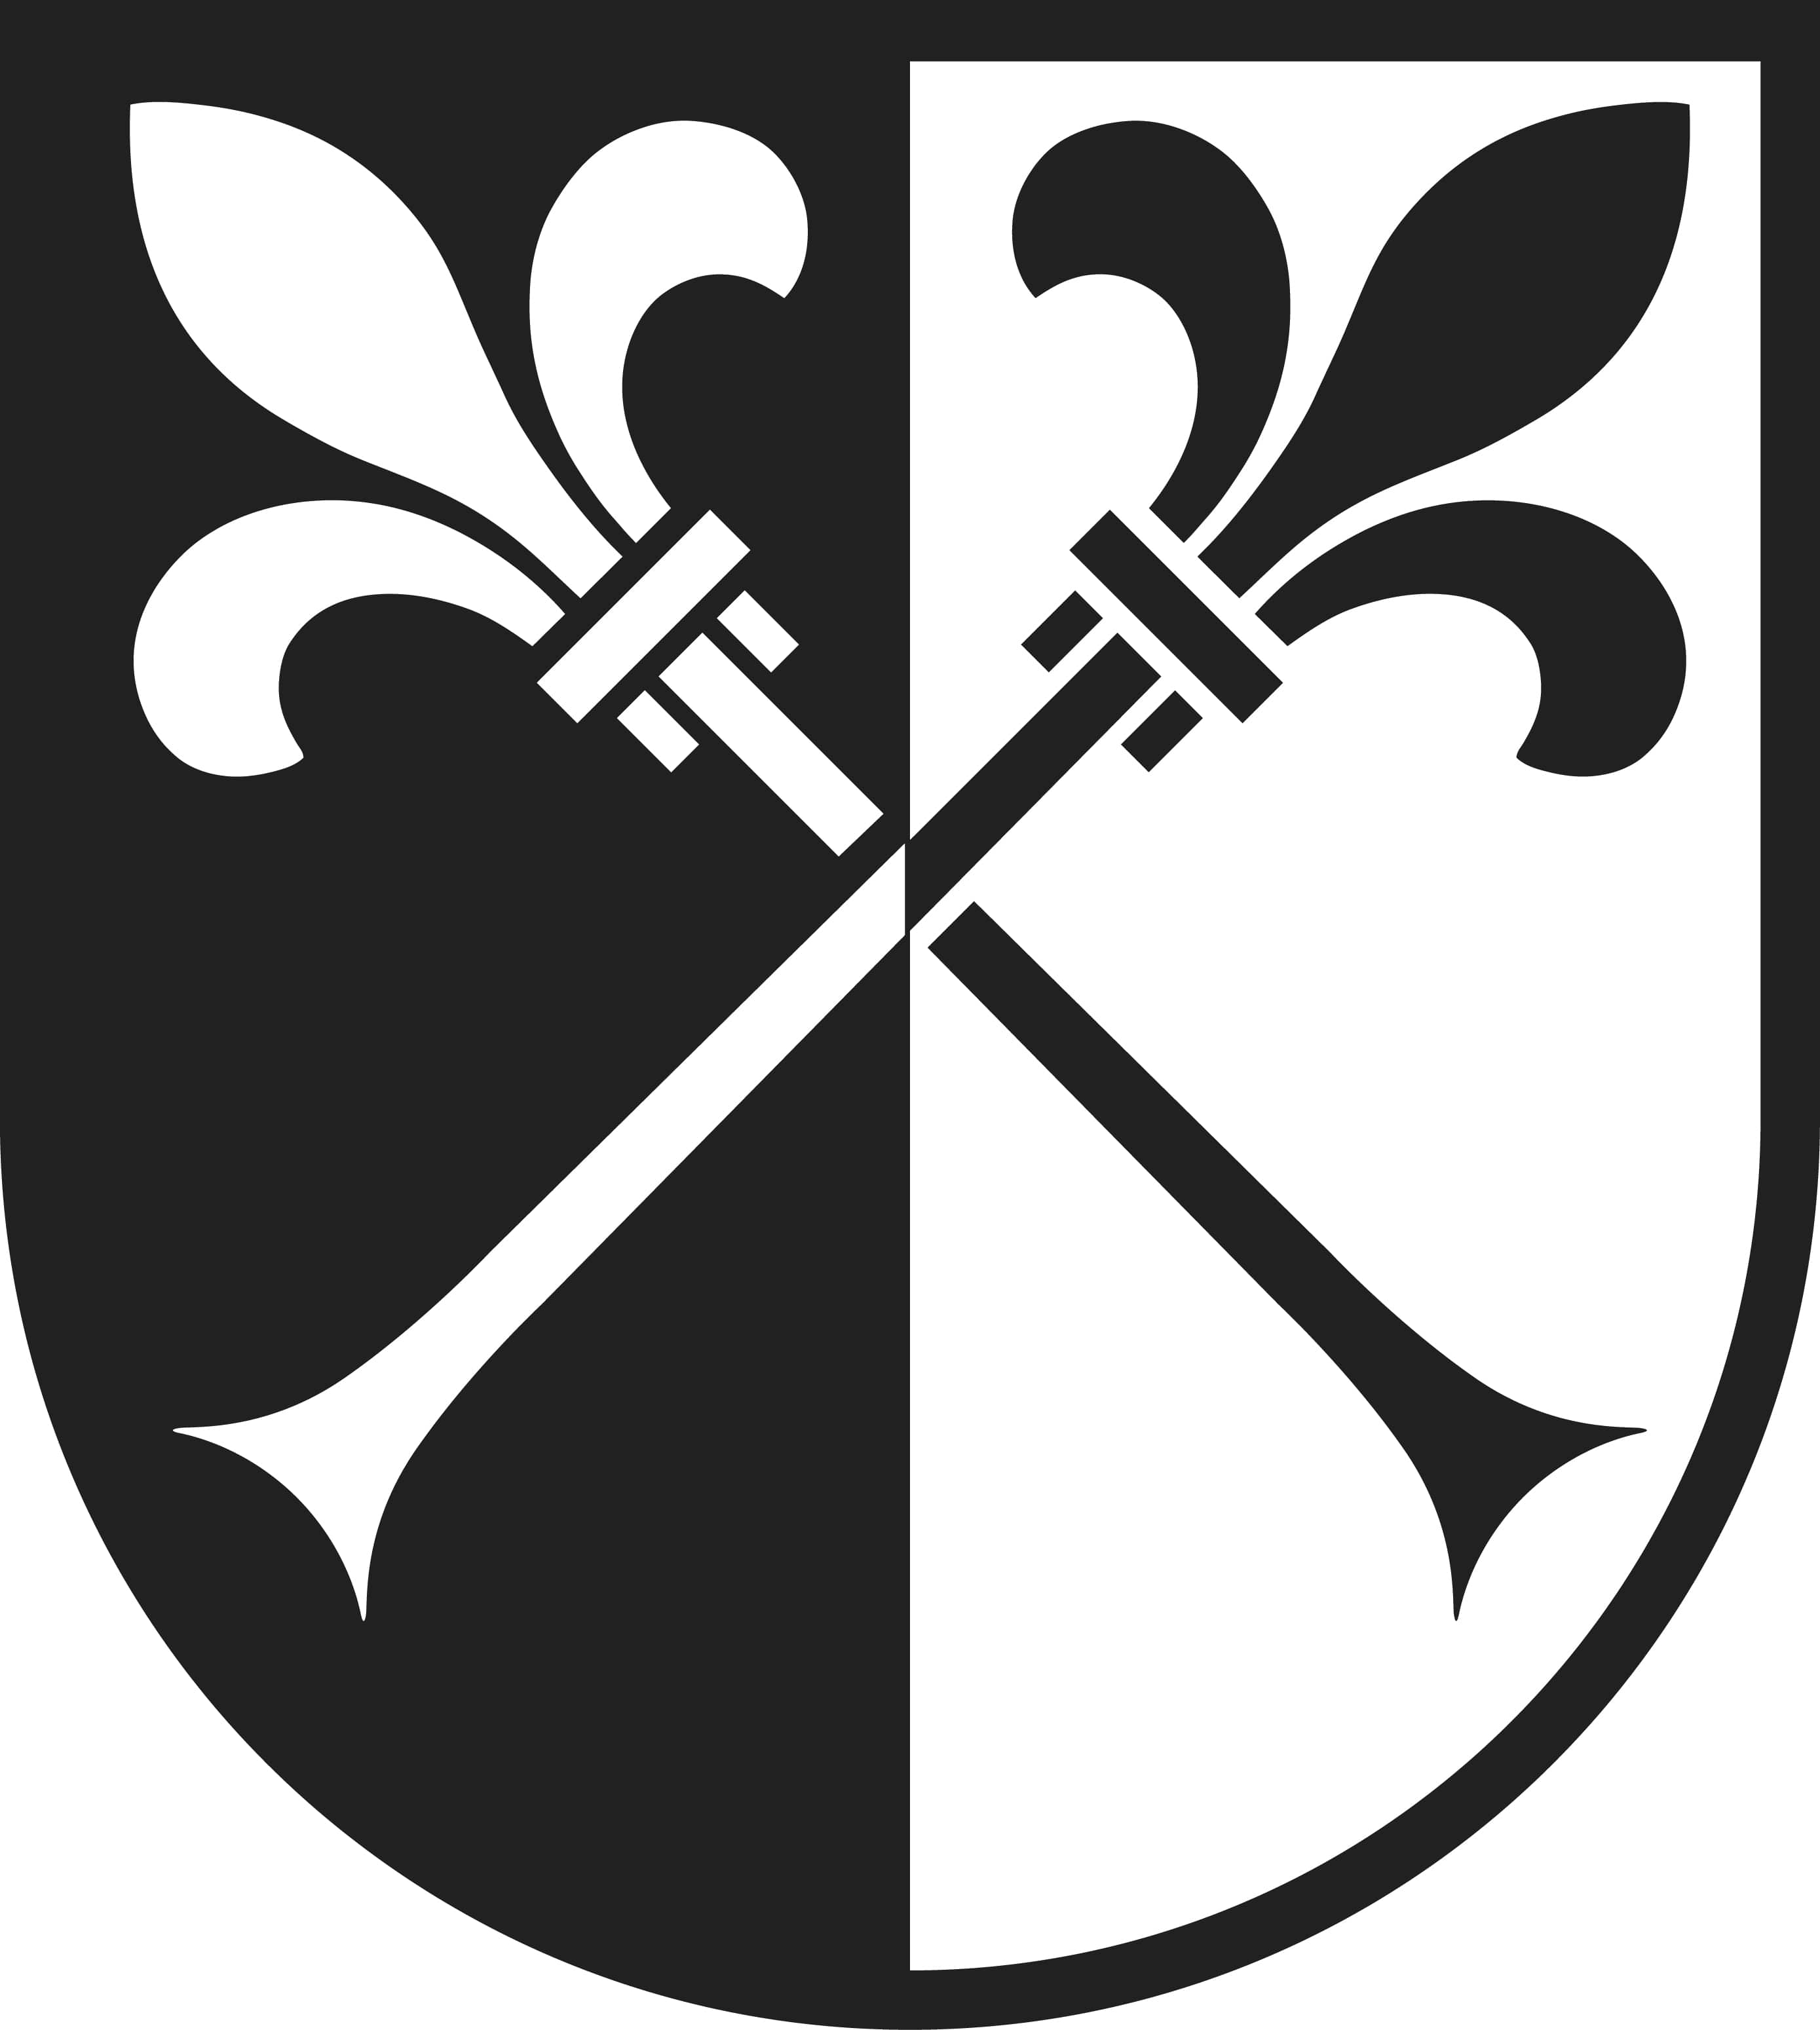 Wappen von Nunningen